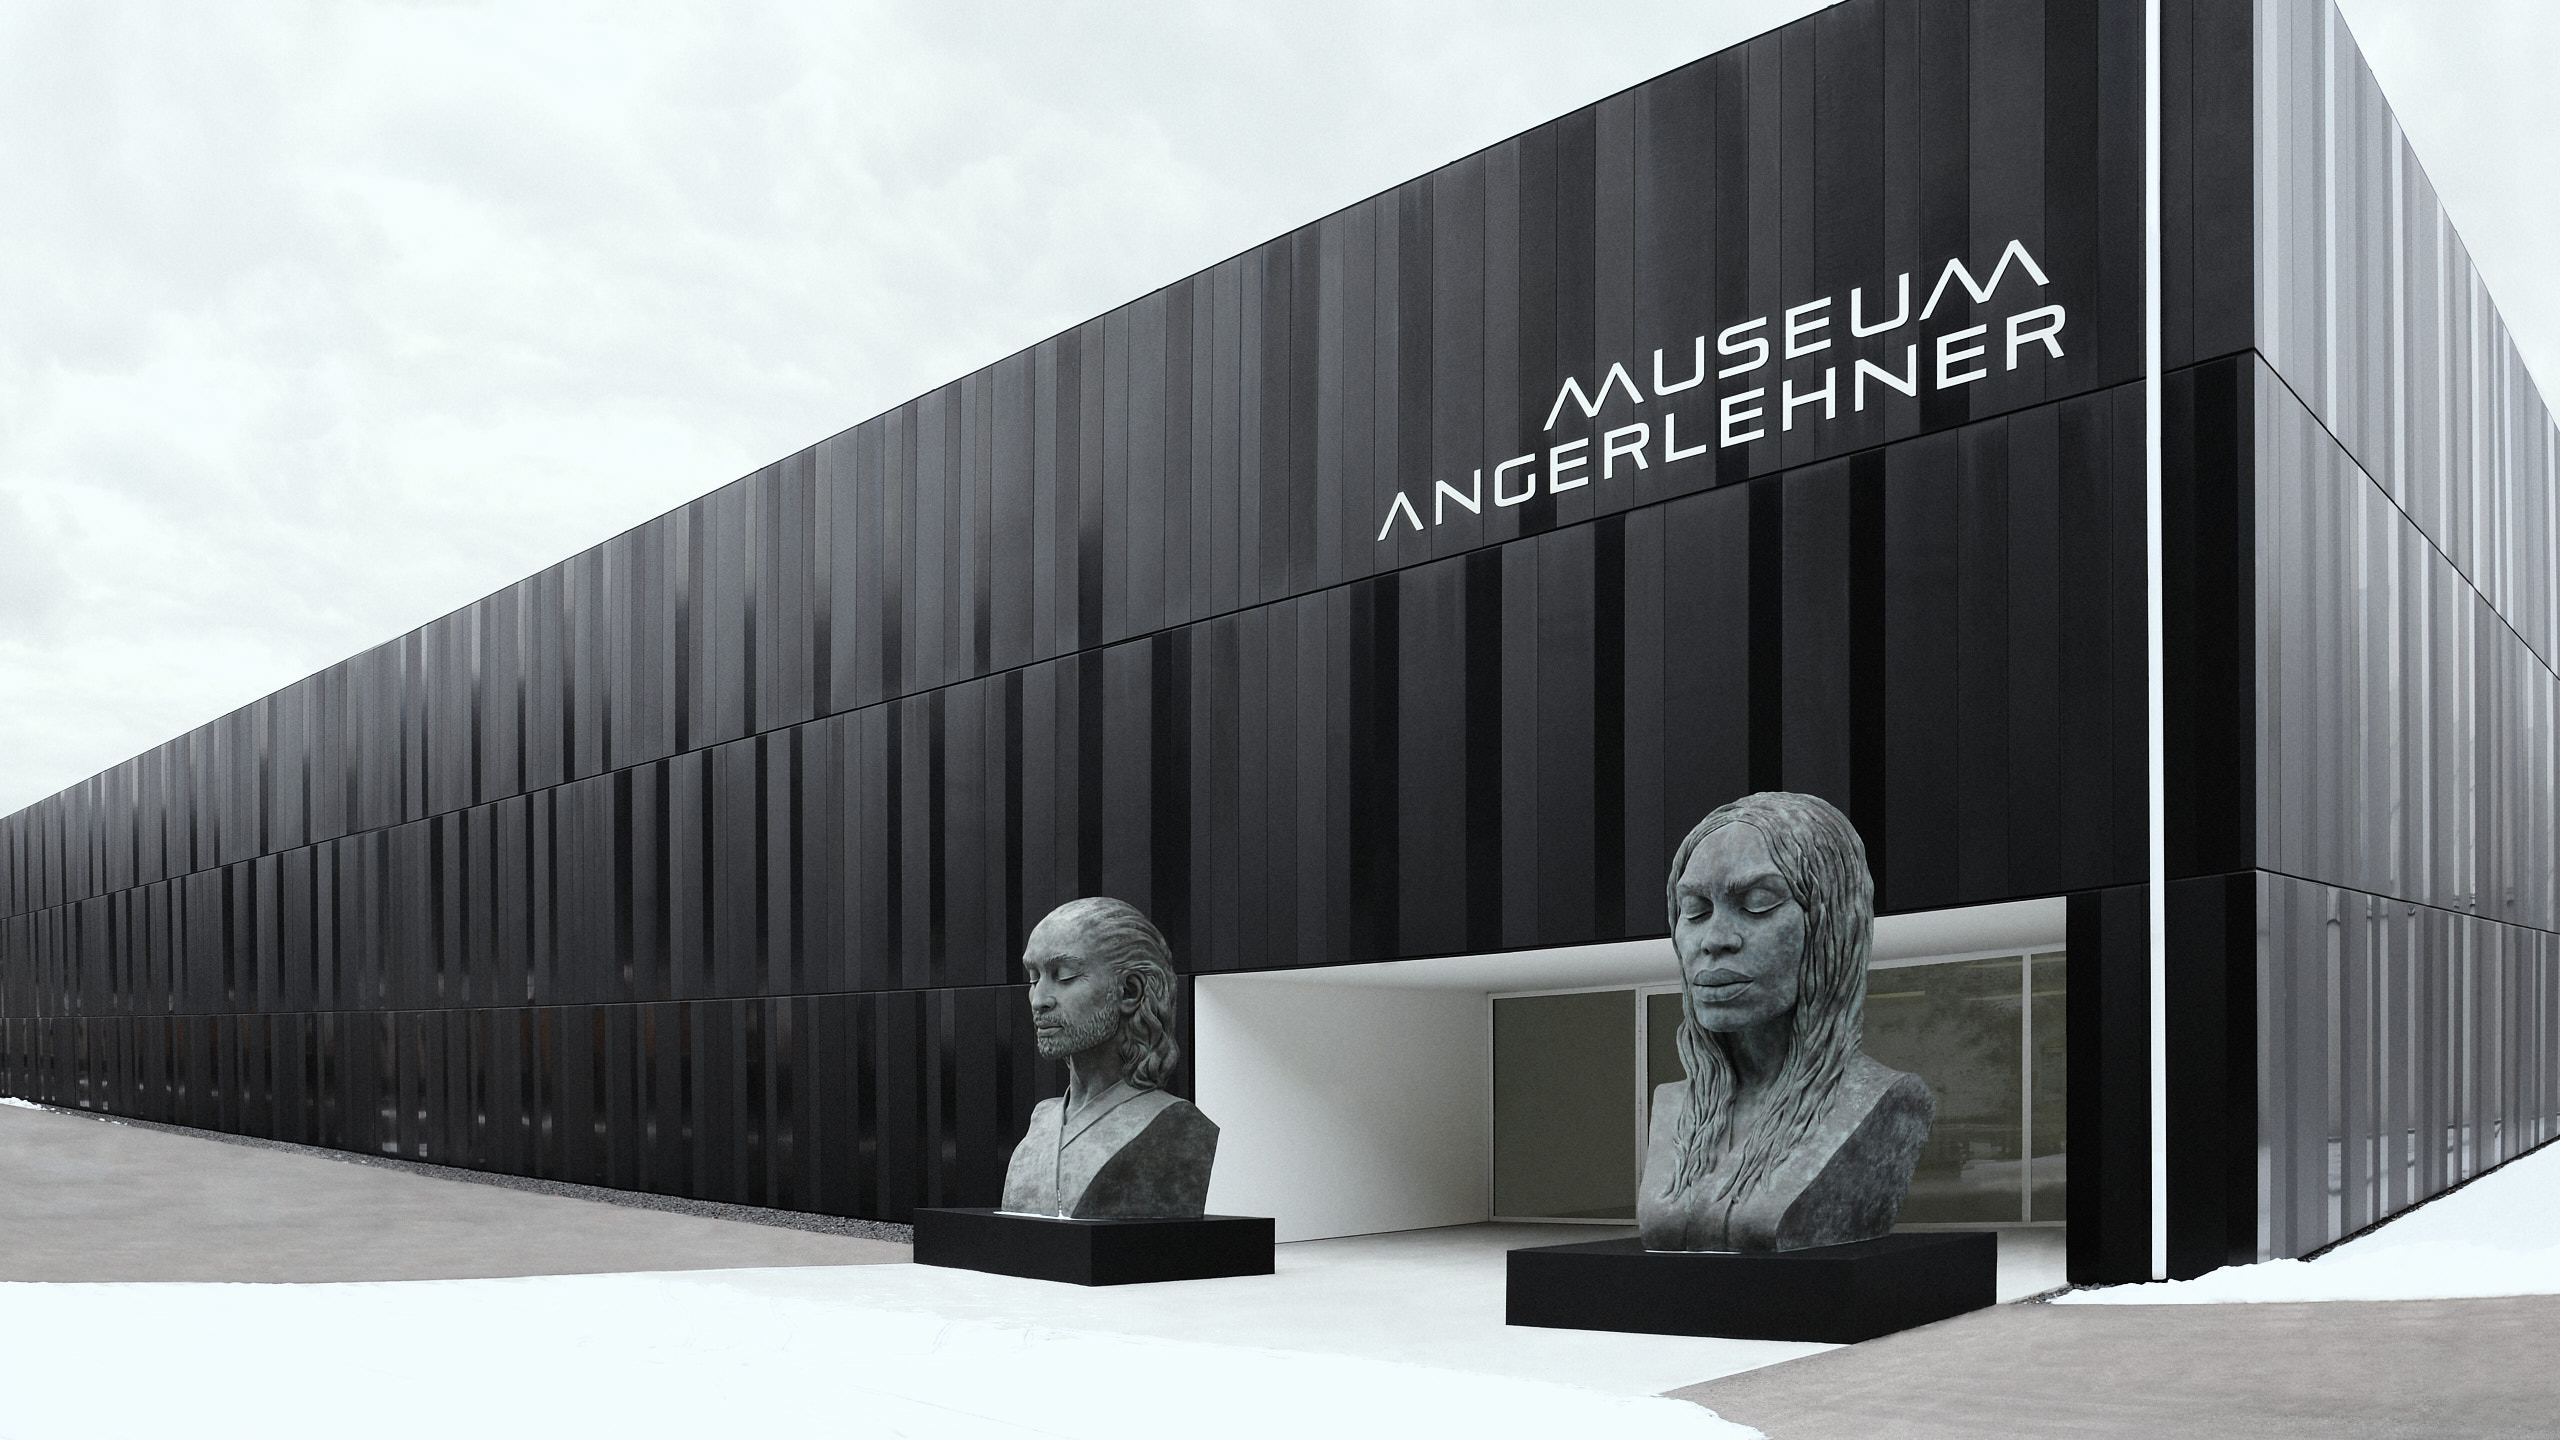 Museum Angelehner, Wels Thaleim guarded by monumental art. Heinz Josef Angerlehner in conversation with the austrian sculptor Helga Vockenhuber